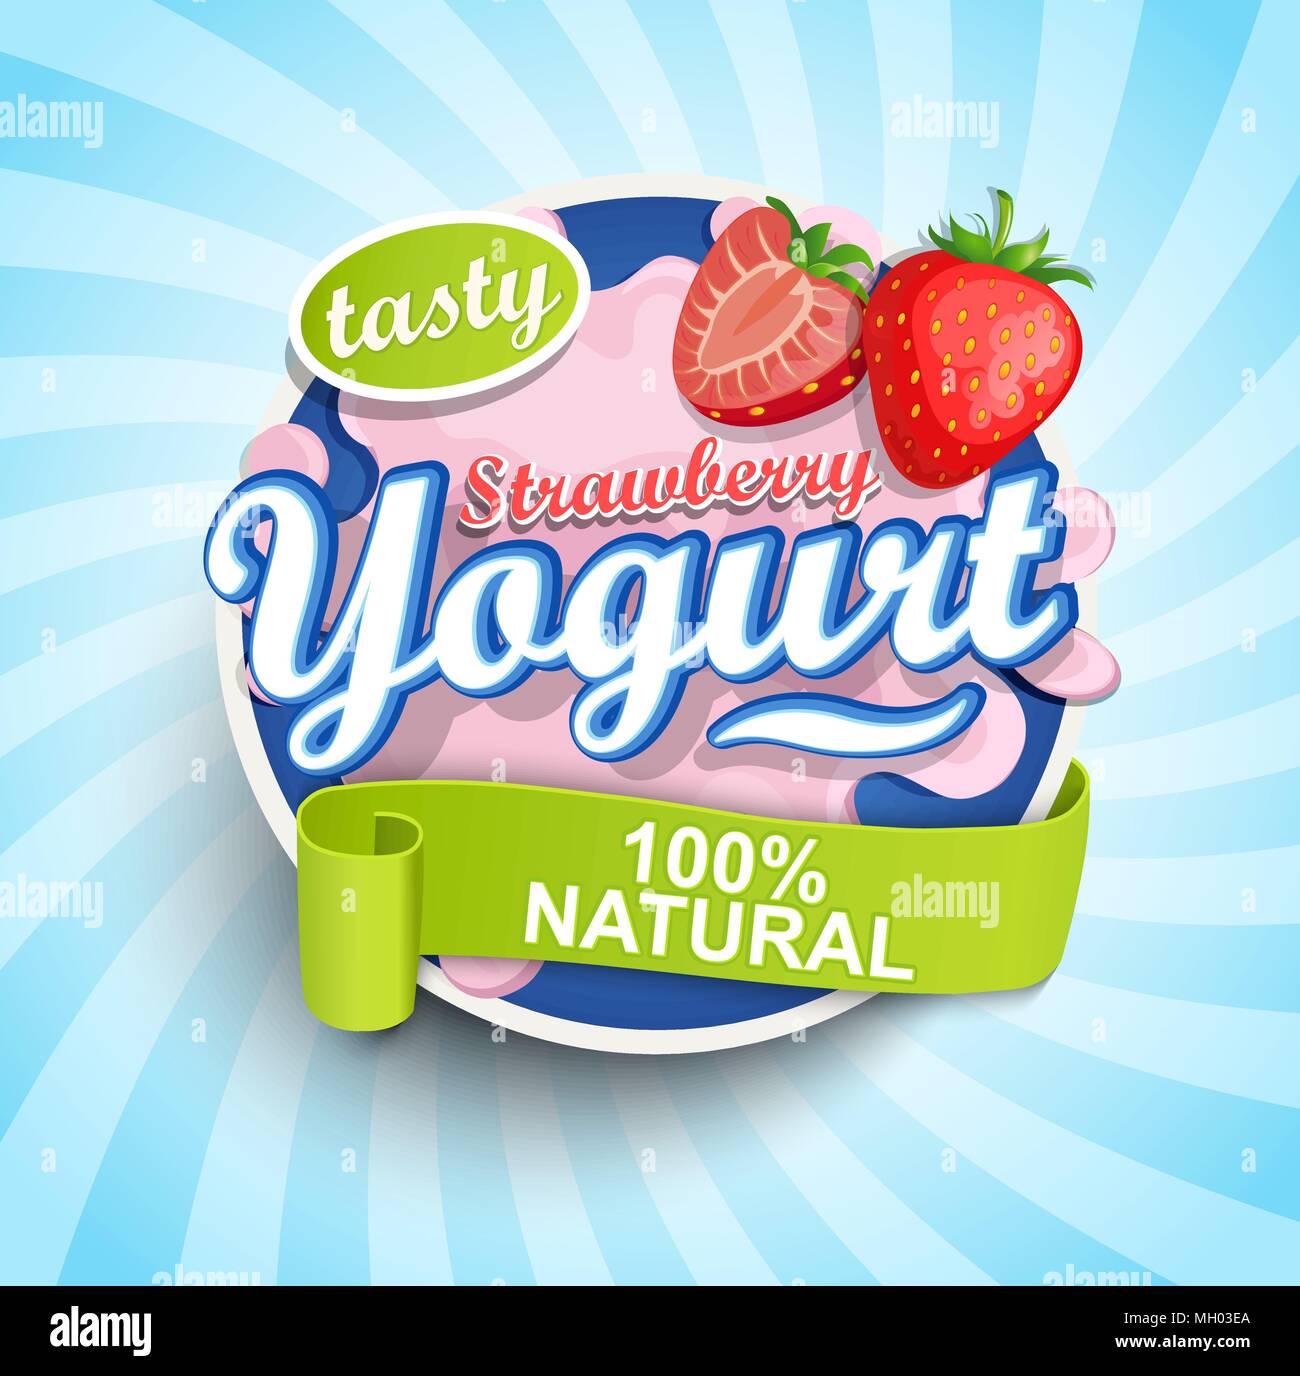 Fresco e naturale di yogurt alla fragola etichetta splash con nastro blu su sfondo a raggiera per logo, template, etichetta, emblema per negozi di generi alimentari, negozi, il confezionamento e la pubblicità. Illustrazione Vettoriale. Illustrazione Vettoriale